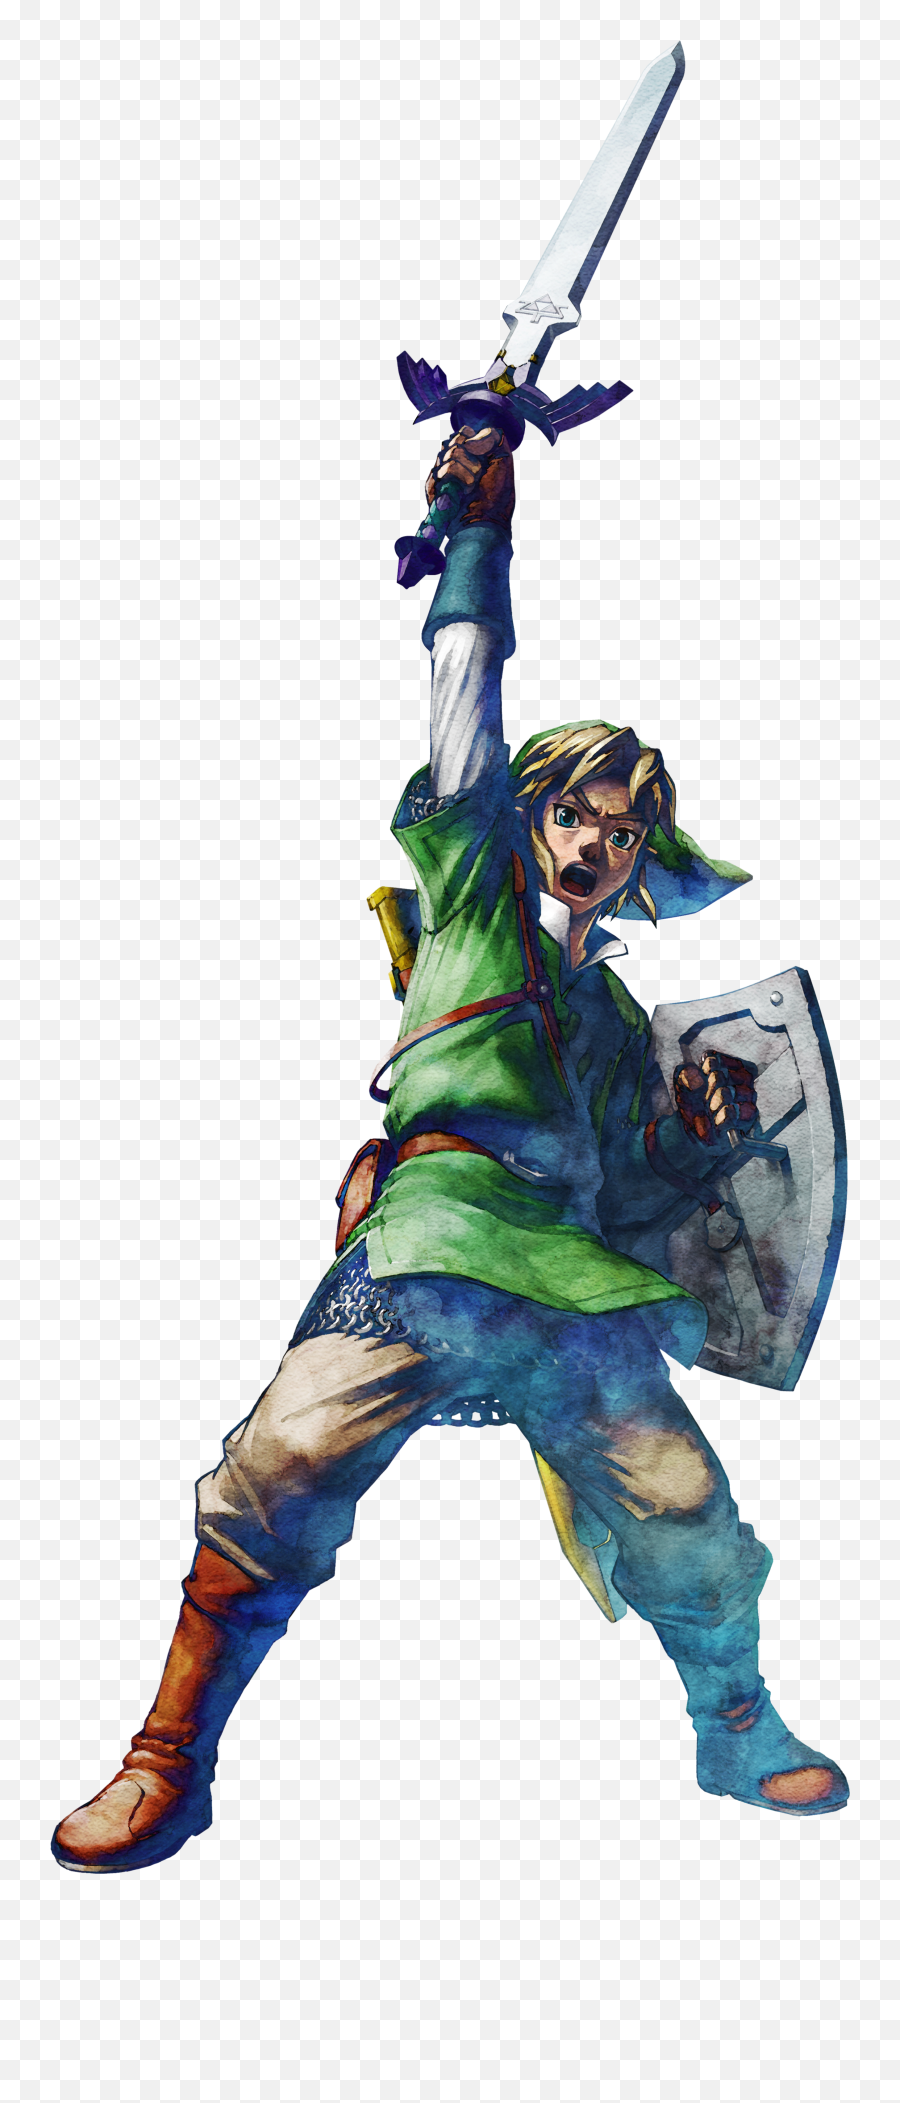 Filelink Alt 3 - The Legend Of Zelda Skyward Swordpng Legend Of Zelda Skyward Sword,Cartoon Sword Png